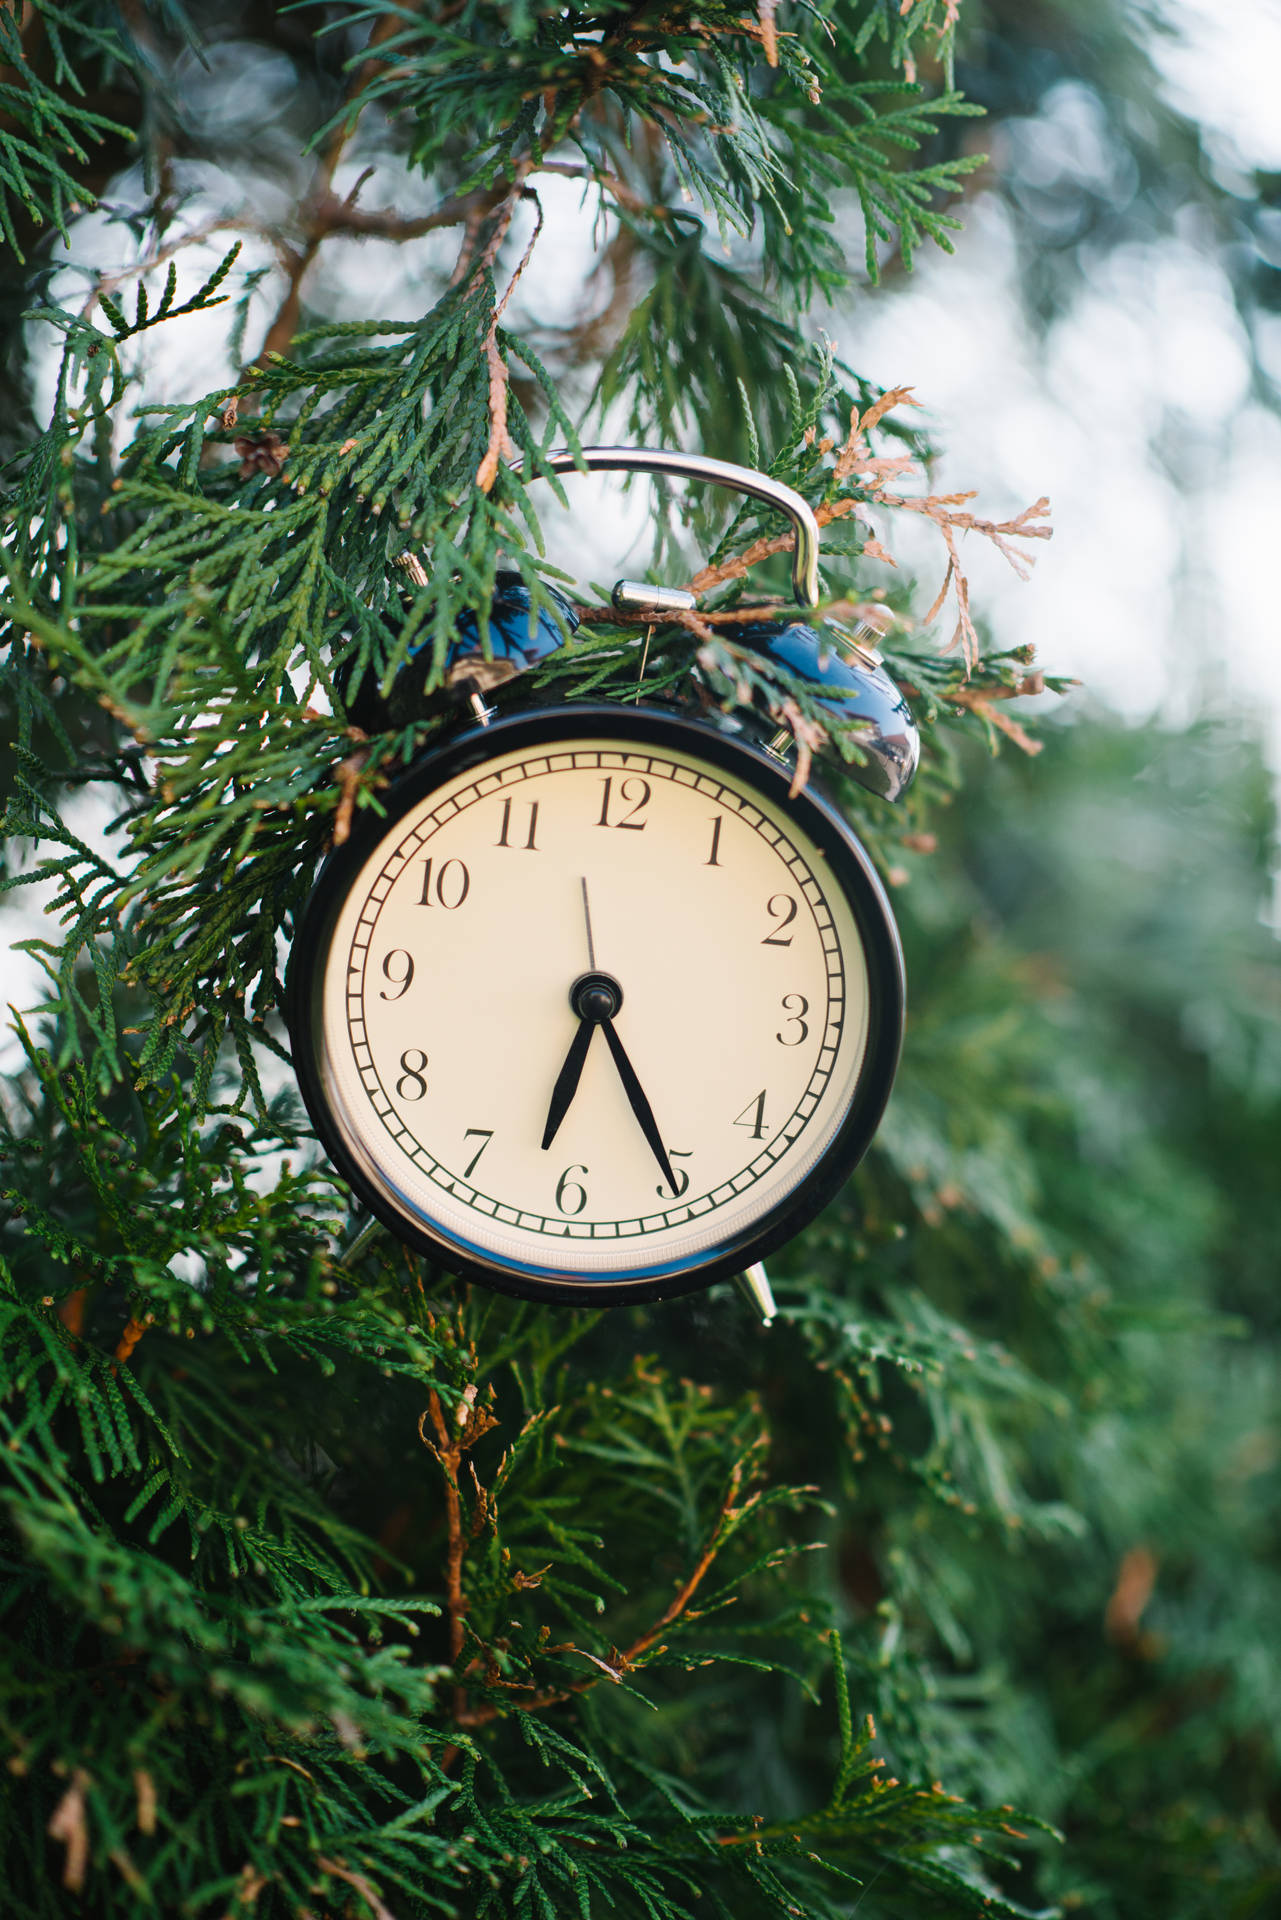 Relojde Tiempo En Un Árbol De Navidad Fondo de pantalla